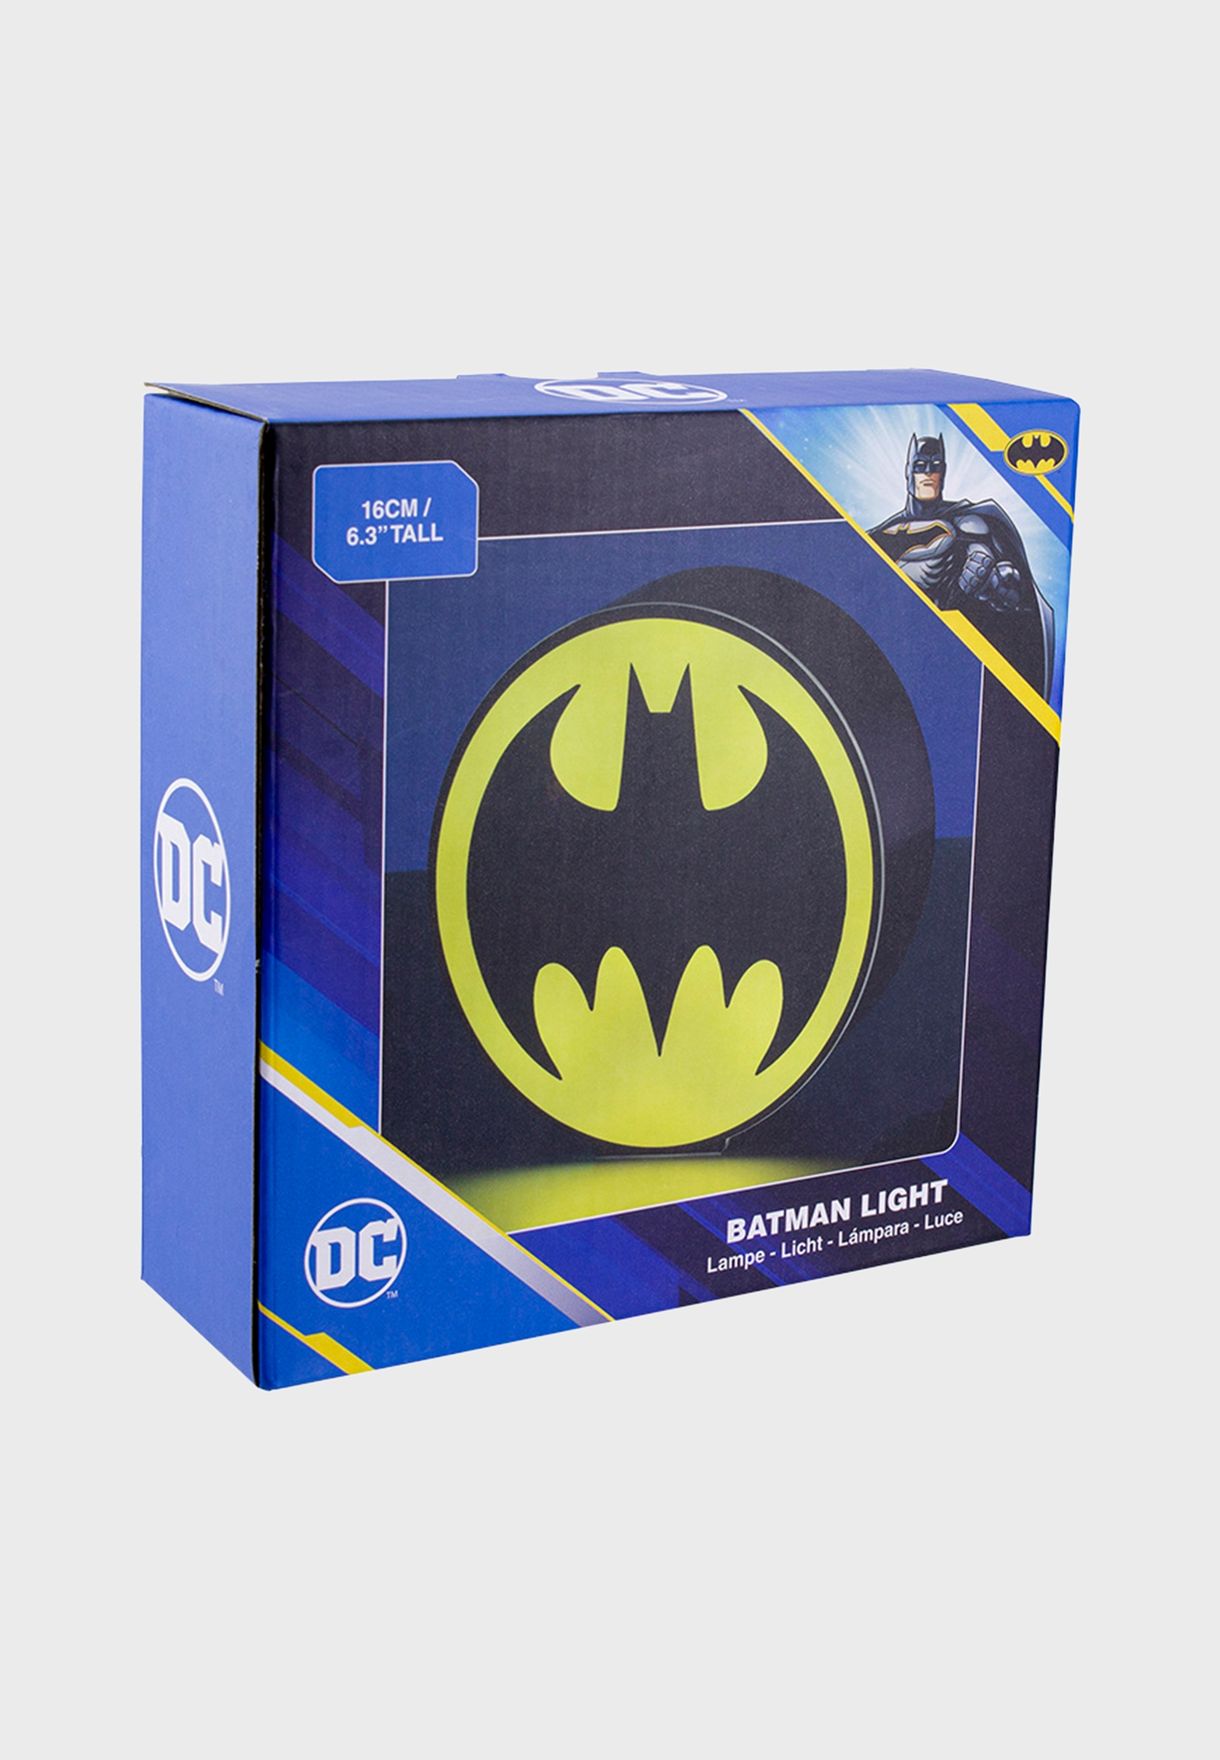 Dc Comics Batman Light Box